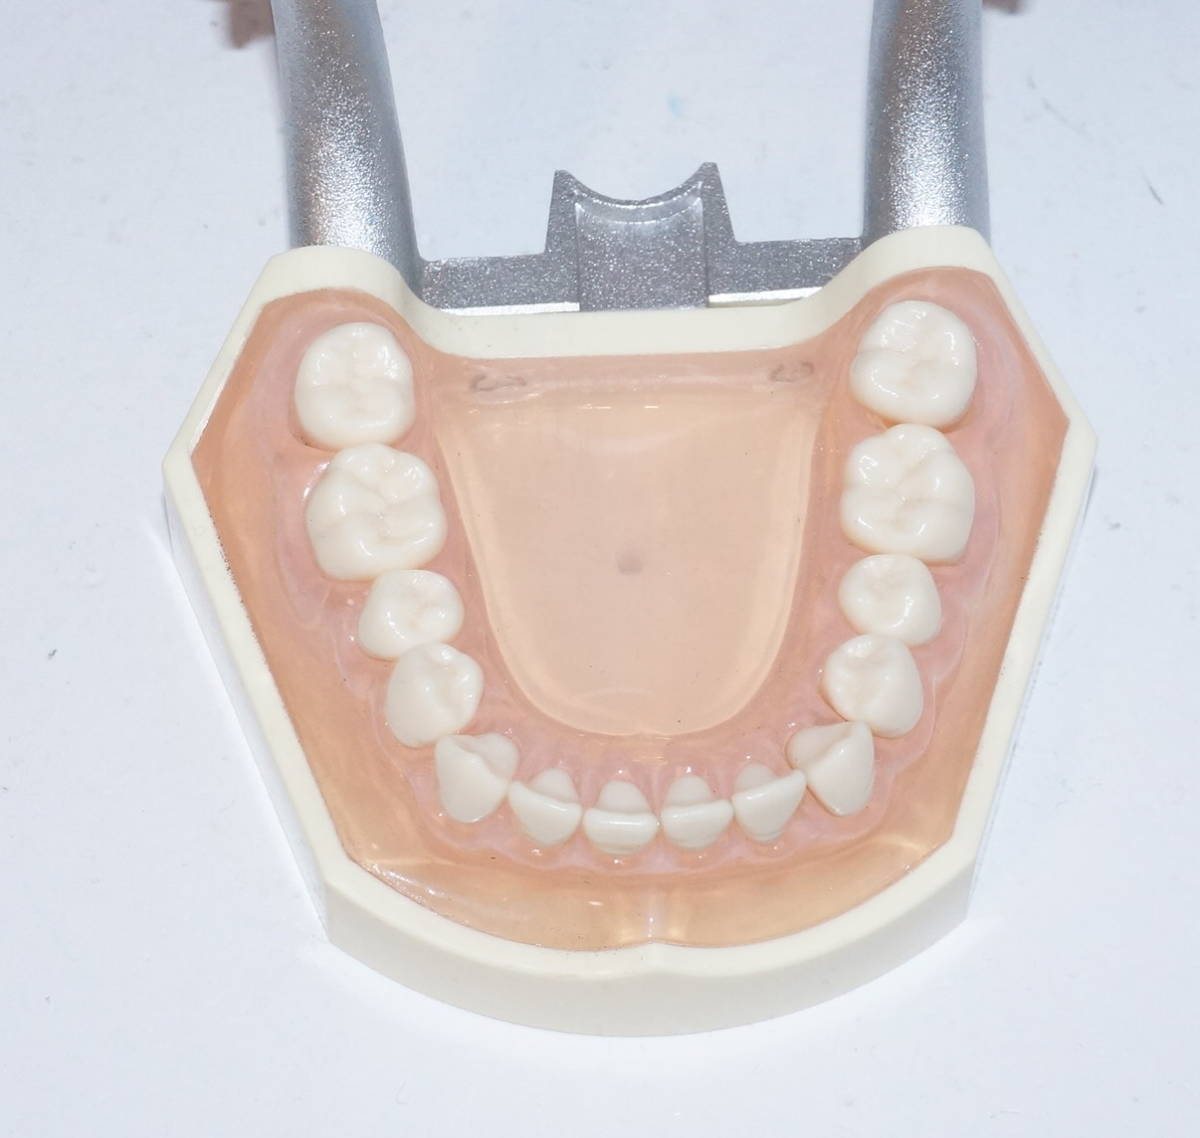 歯科 模型 ニッシン 複製歯牙着脱模型 PE-ANA009 顎模型 NISSIN